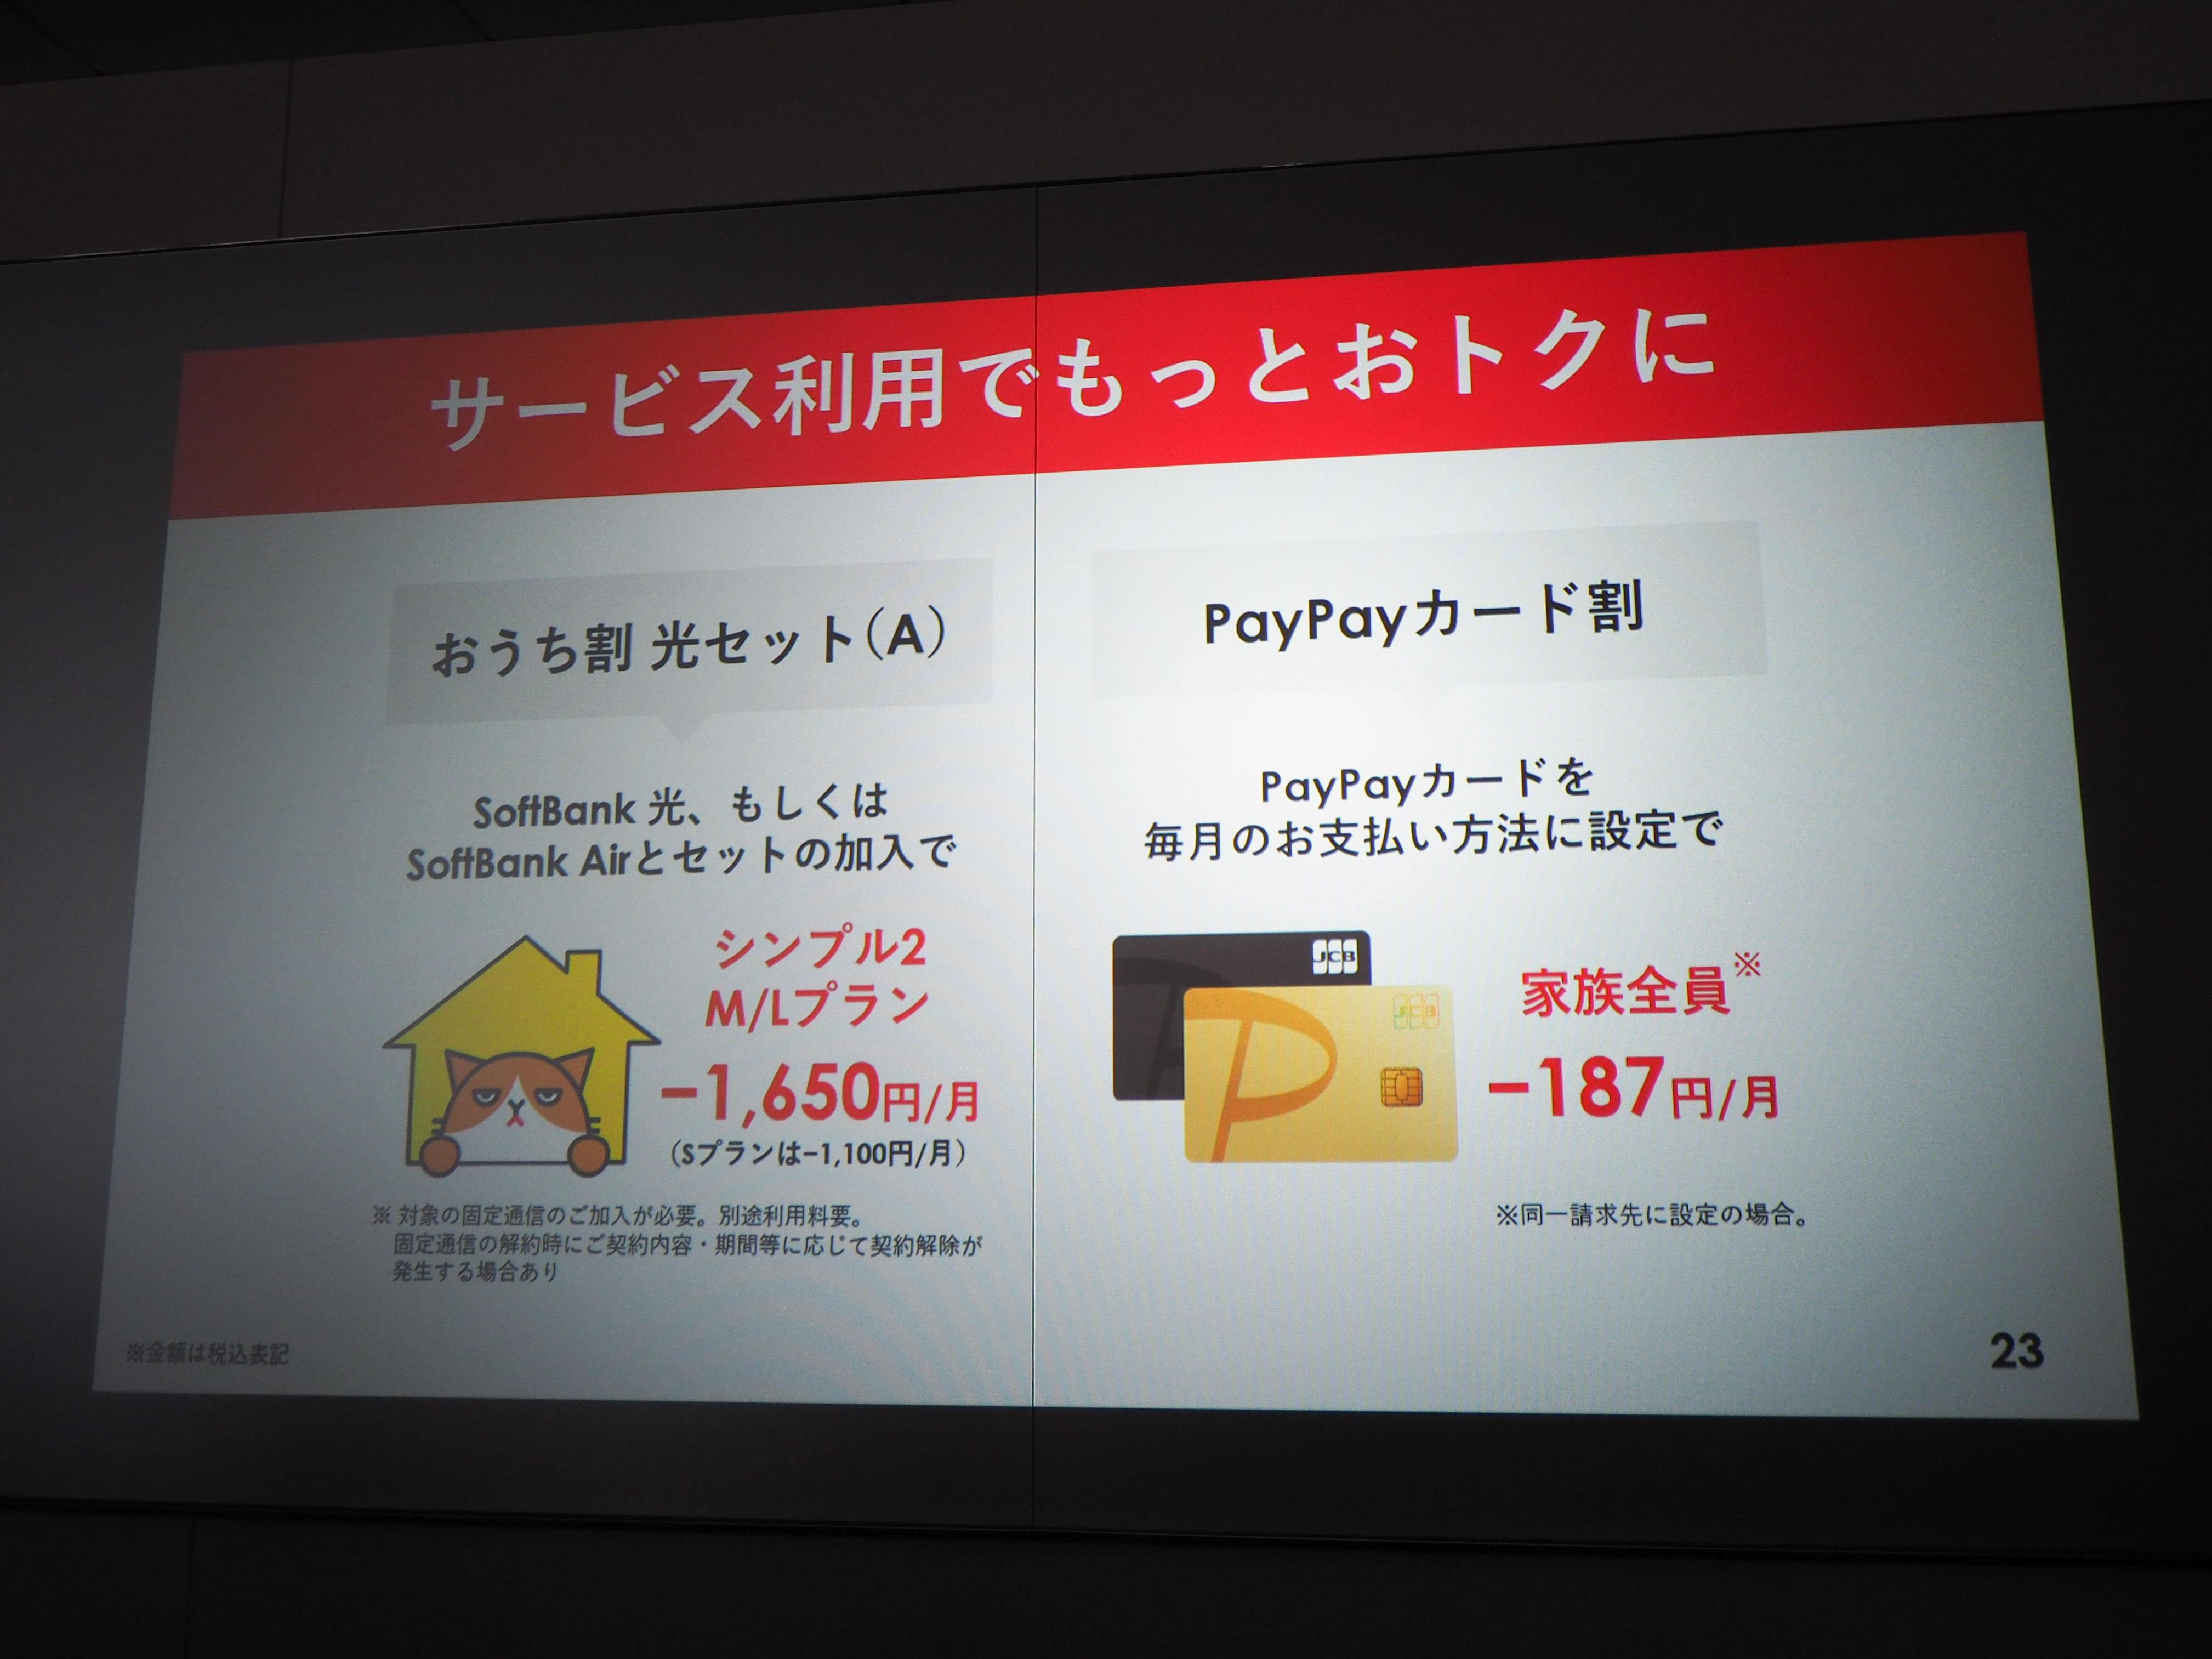 シンプル2では従来の「おうち割　光セット(A)」に加え、新たに「PayPayカード」で料金を支払うことで適用される「PayPayカード割」が追加された